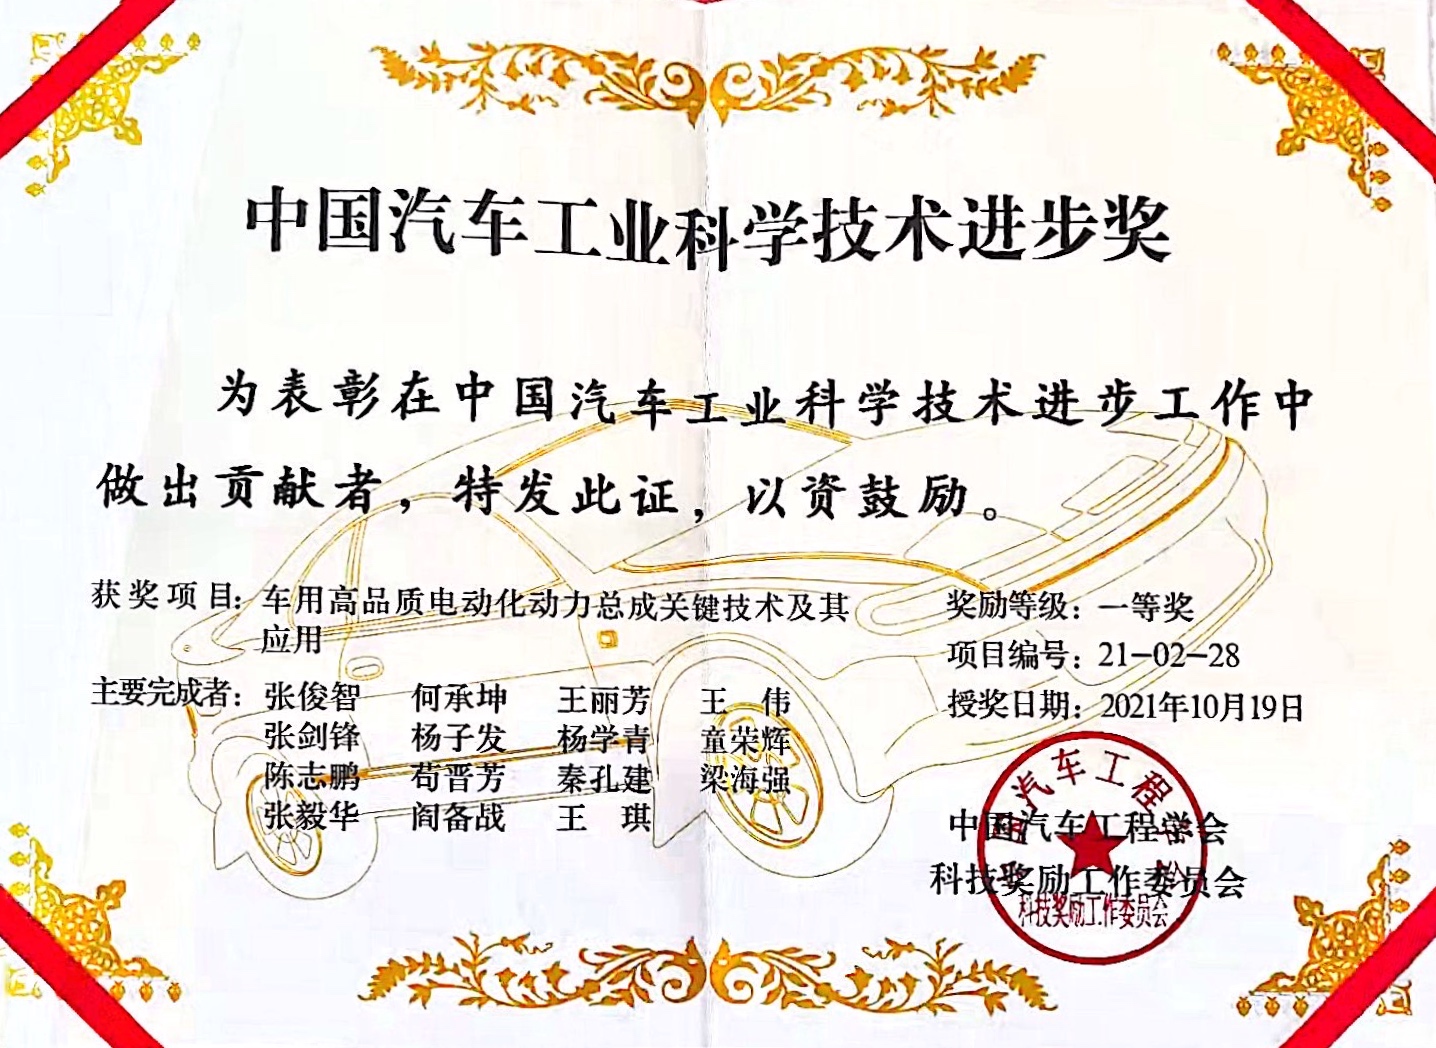 车辆学院张俊智教授团队获 2021年度中国汽车工业科学技术一等奖.jpeg